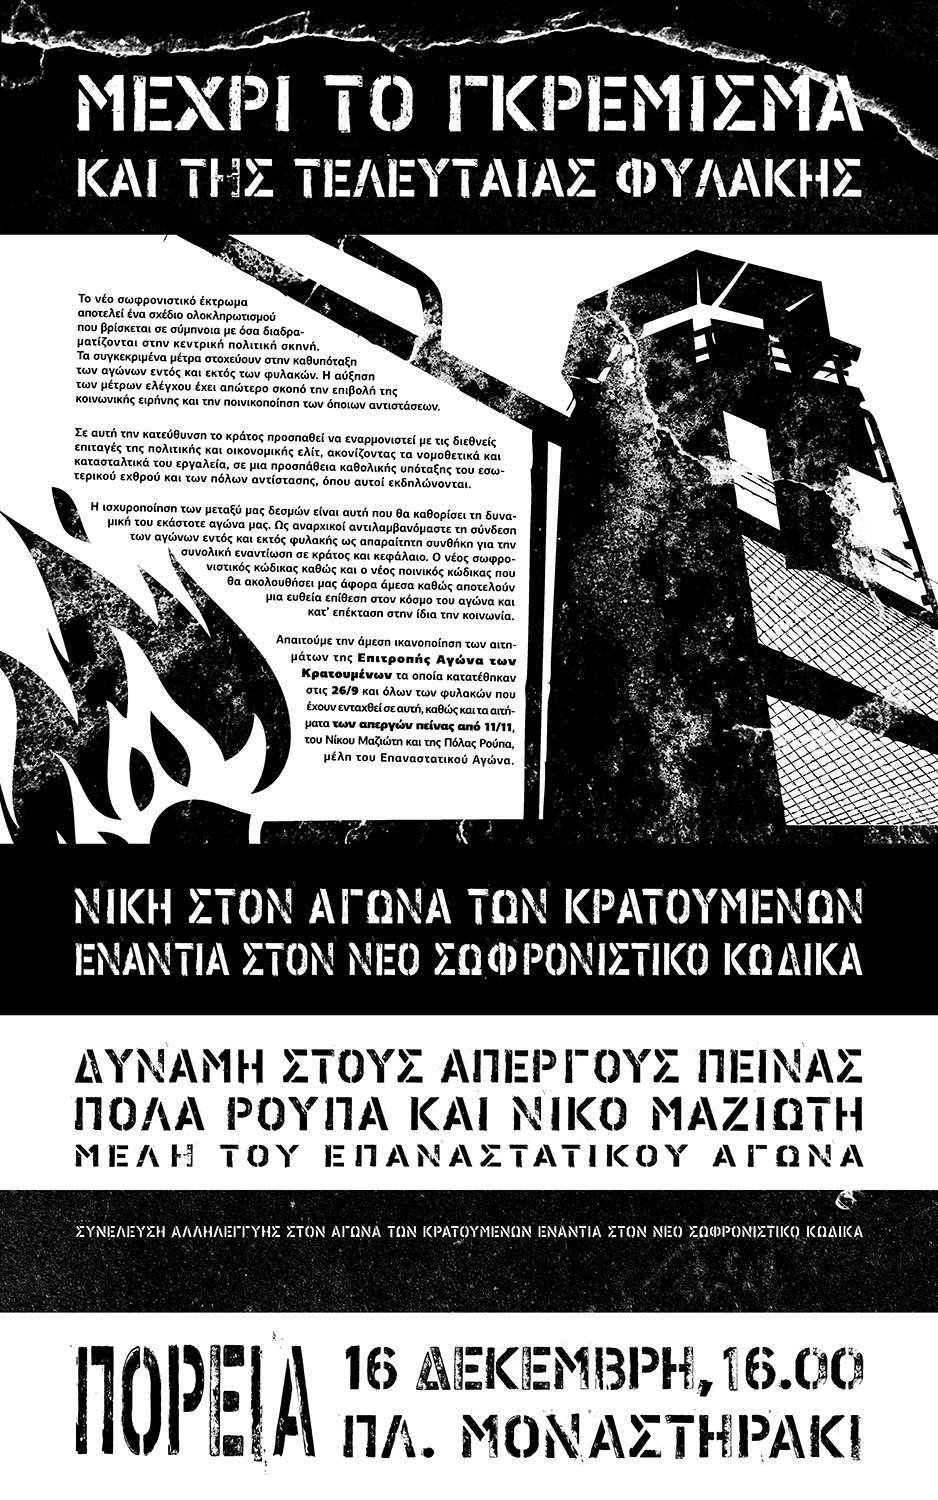 Αθήνα: Συγκέντρωση-πορεία αλληλεγγύης, στους απεργούς πείνας Ν. Μαζιώτη και Π. Ρούπα